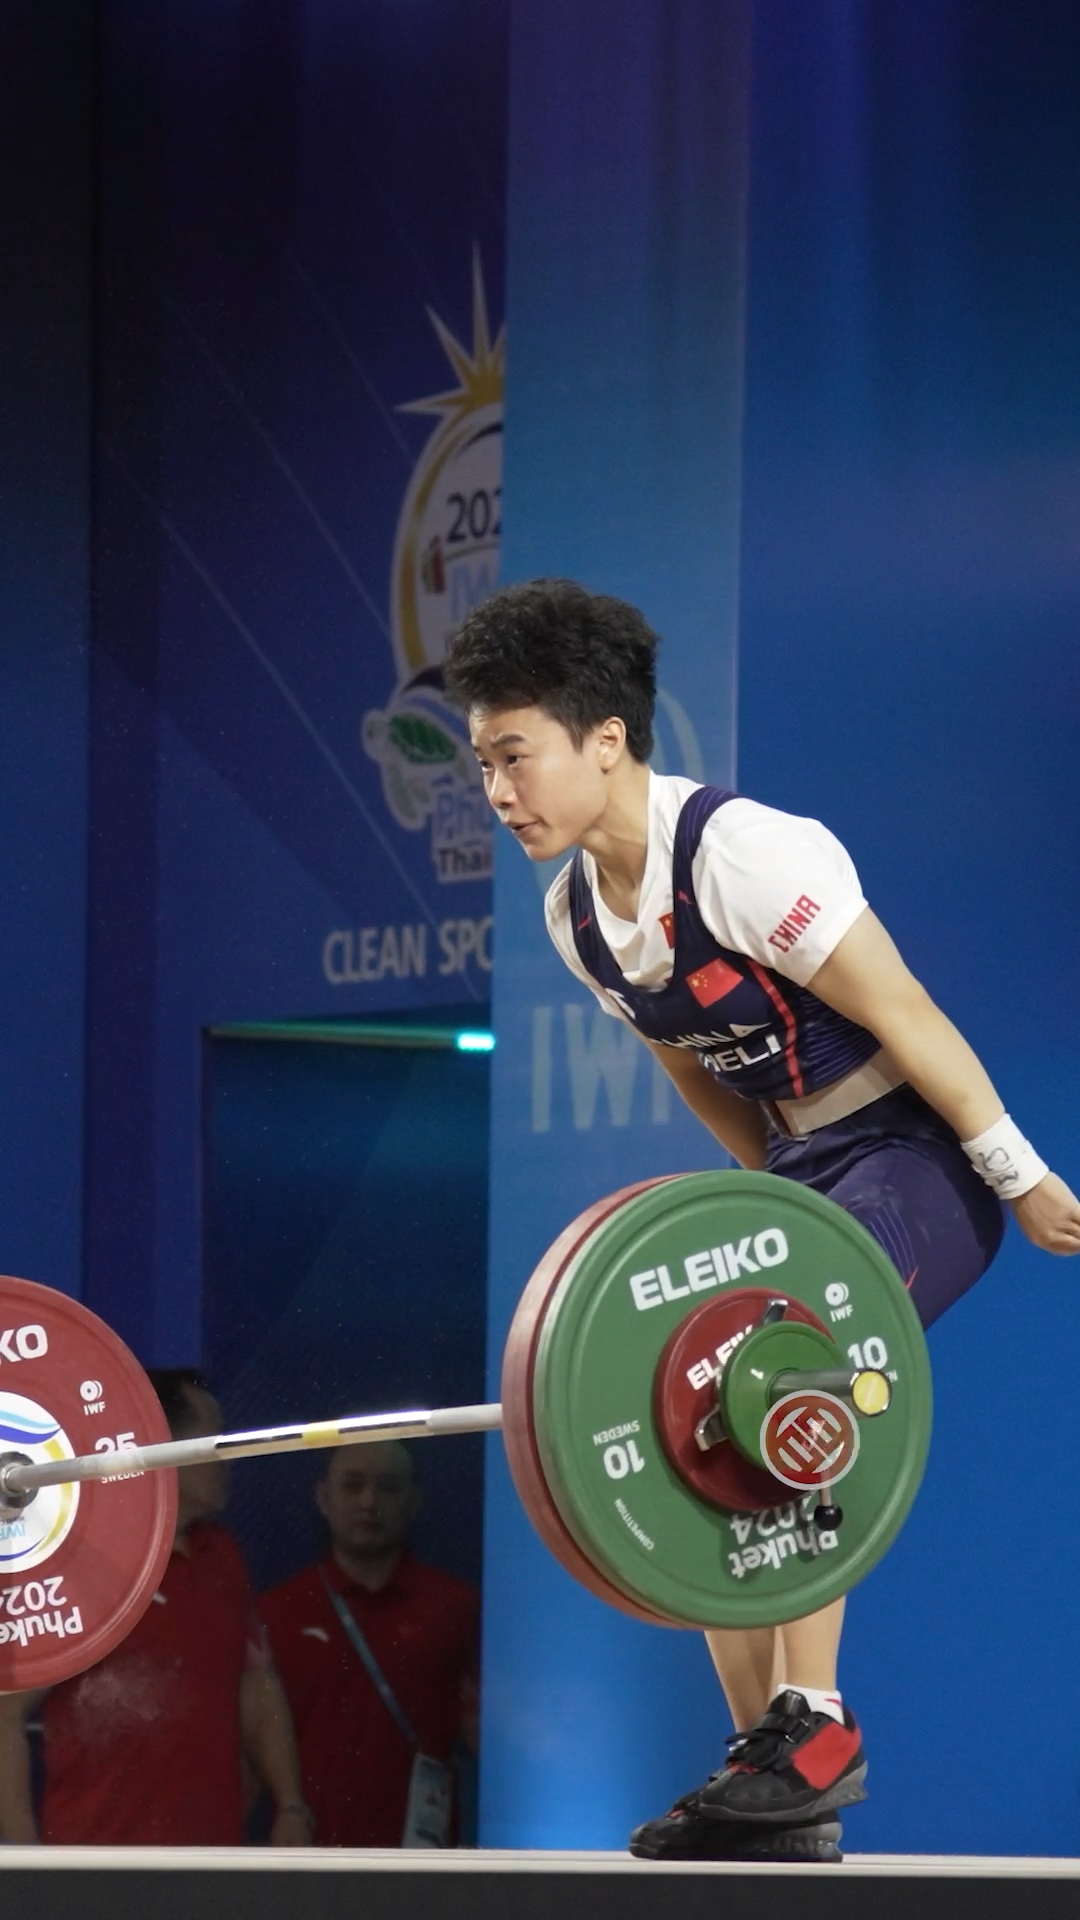 侯志慧 抓举97公斤，刷新抓举世界纪录。217公斤的总成绩也使她成为了49公斤级奥运资格系统的世界第一。